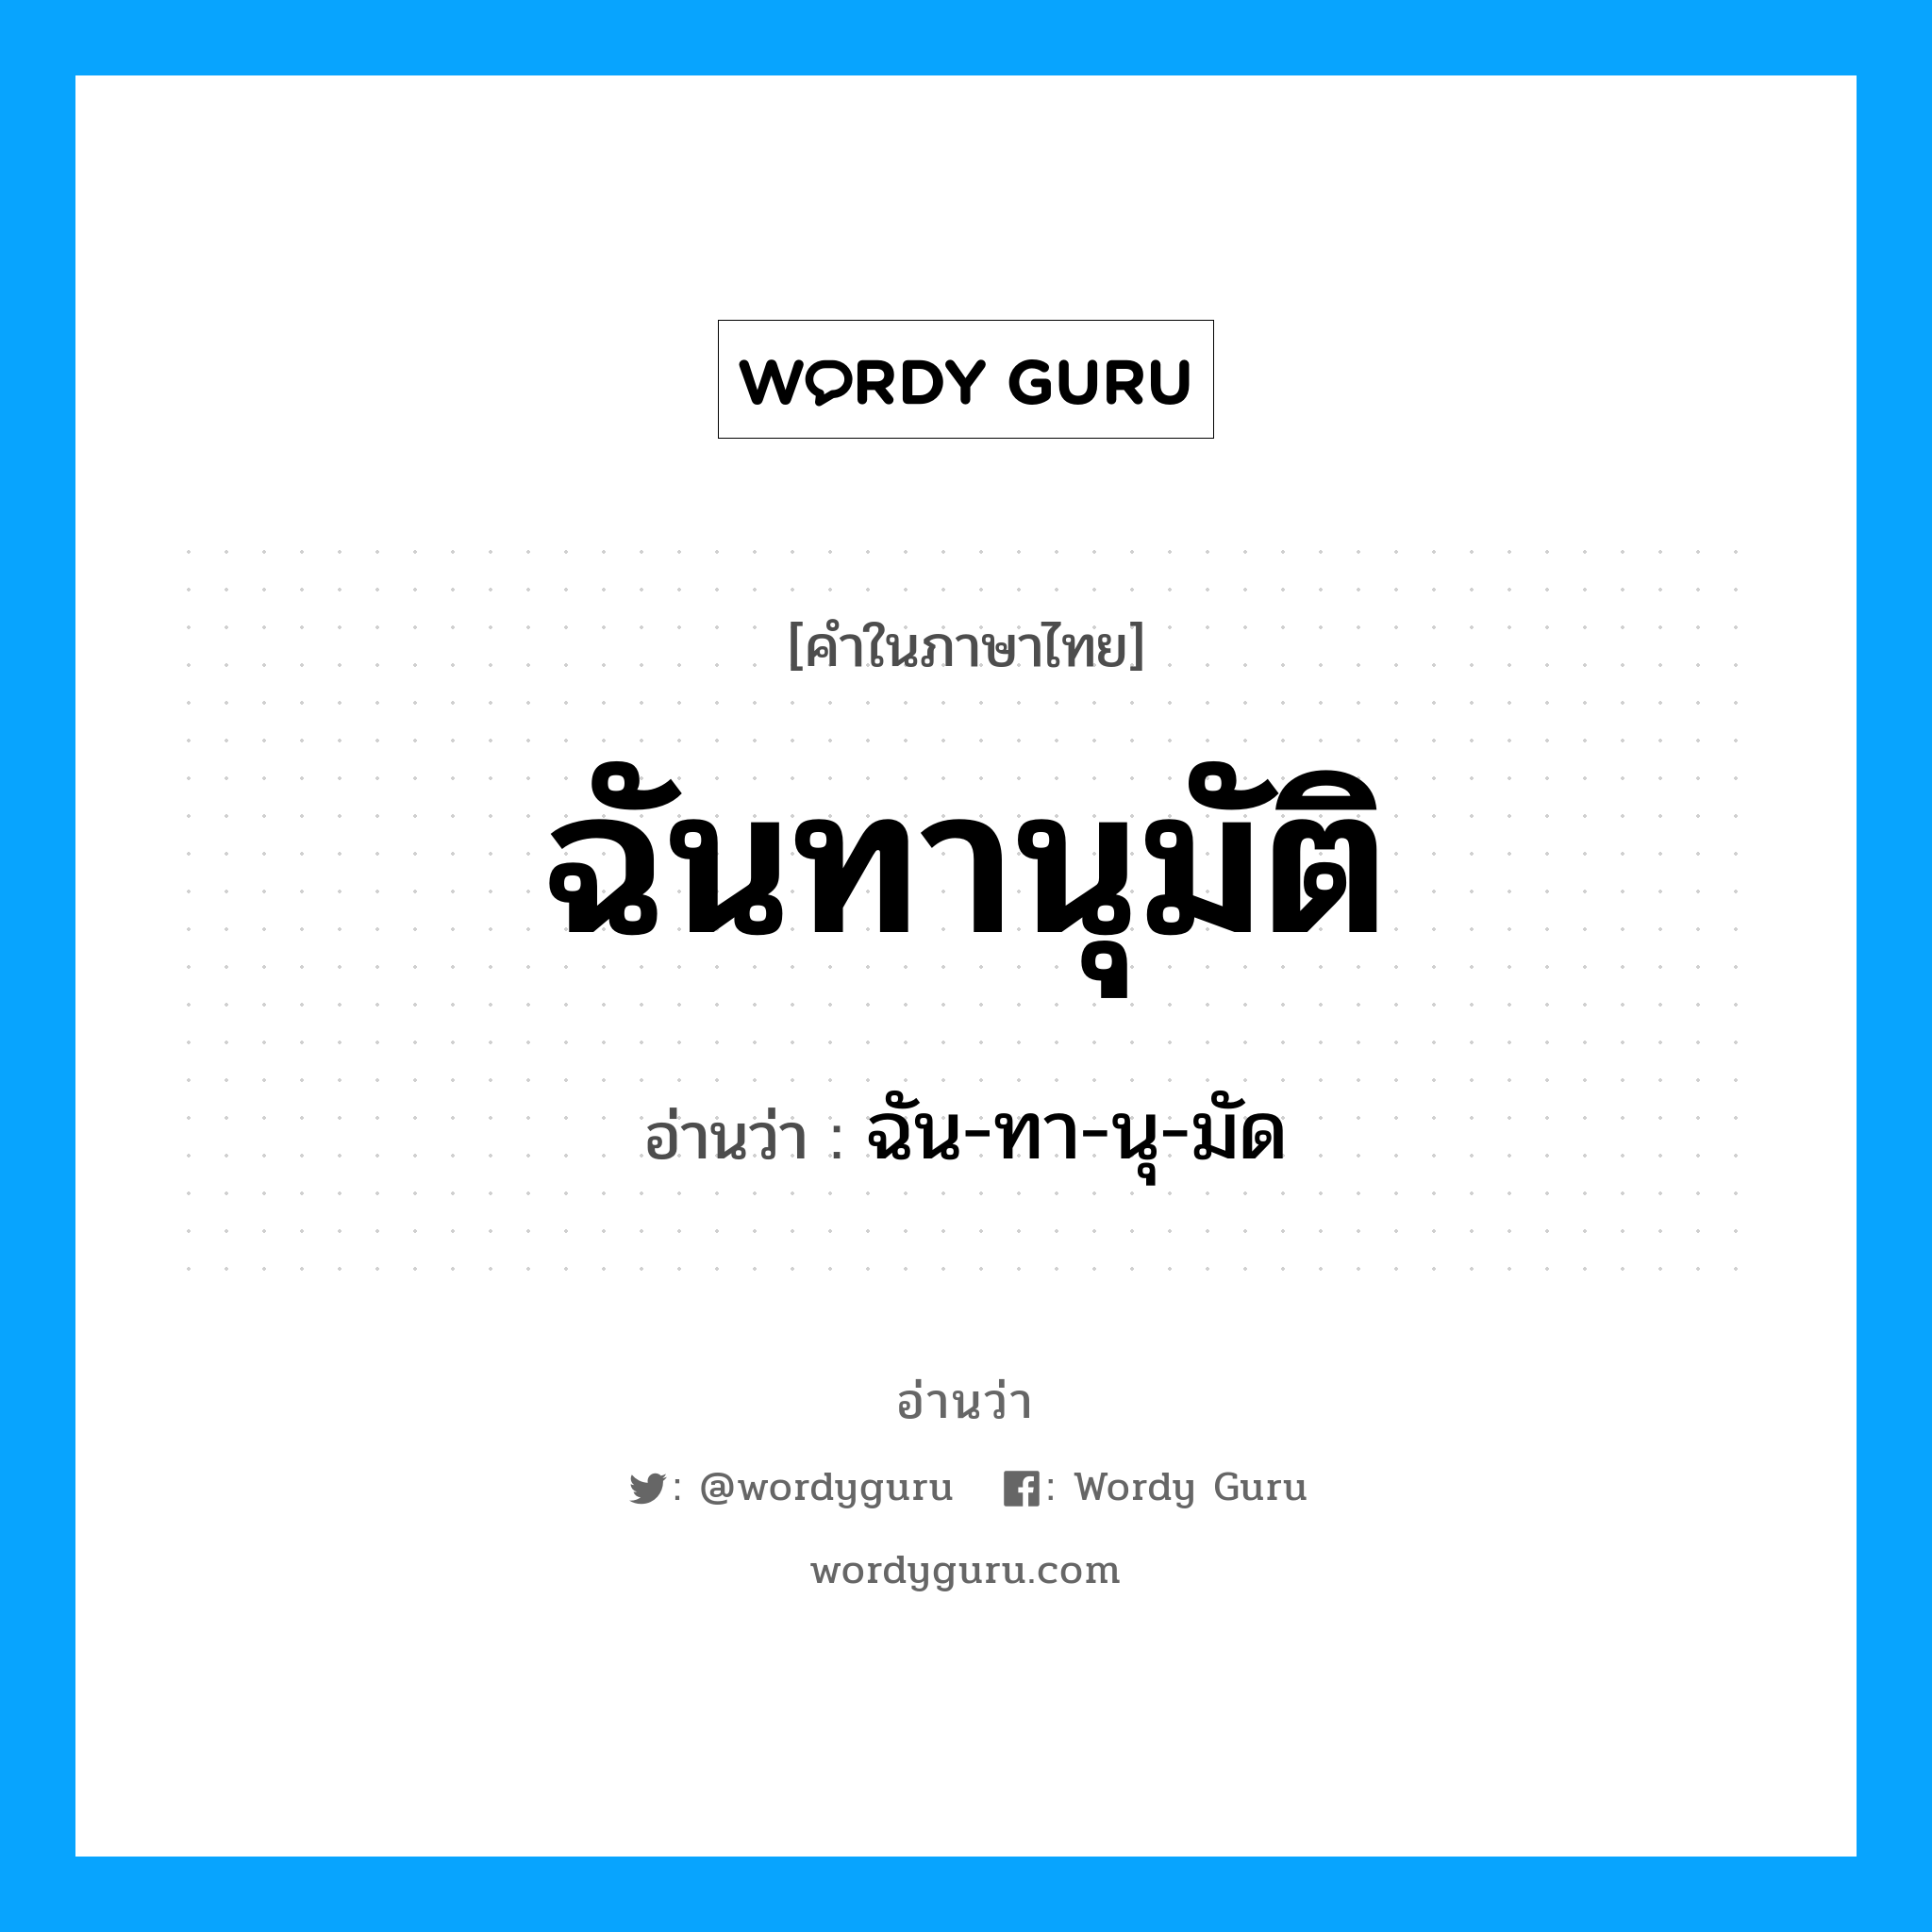 ฉัน-ทา-นุ-มัด เป็นคำอ่านของคำไหน?, คำในภาษาไทย ฉัน-ทา-นุ-มัด อ่านว่า ฉันทานุมัติ